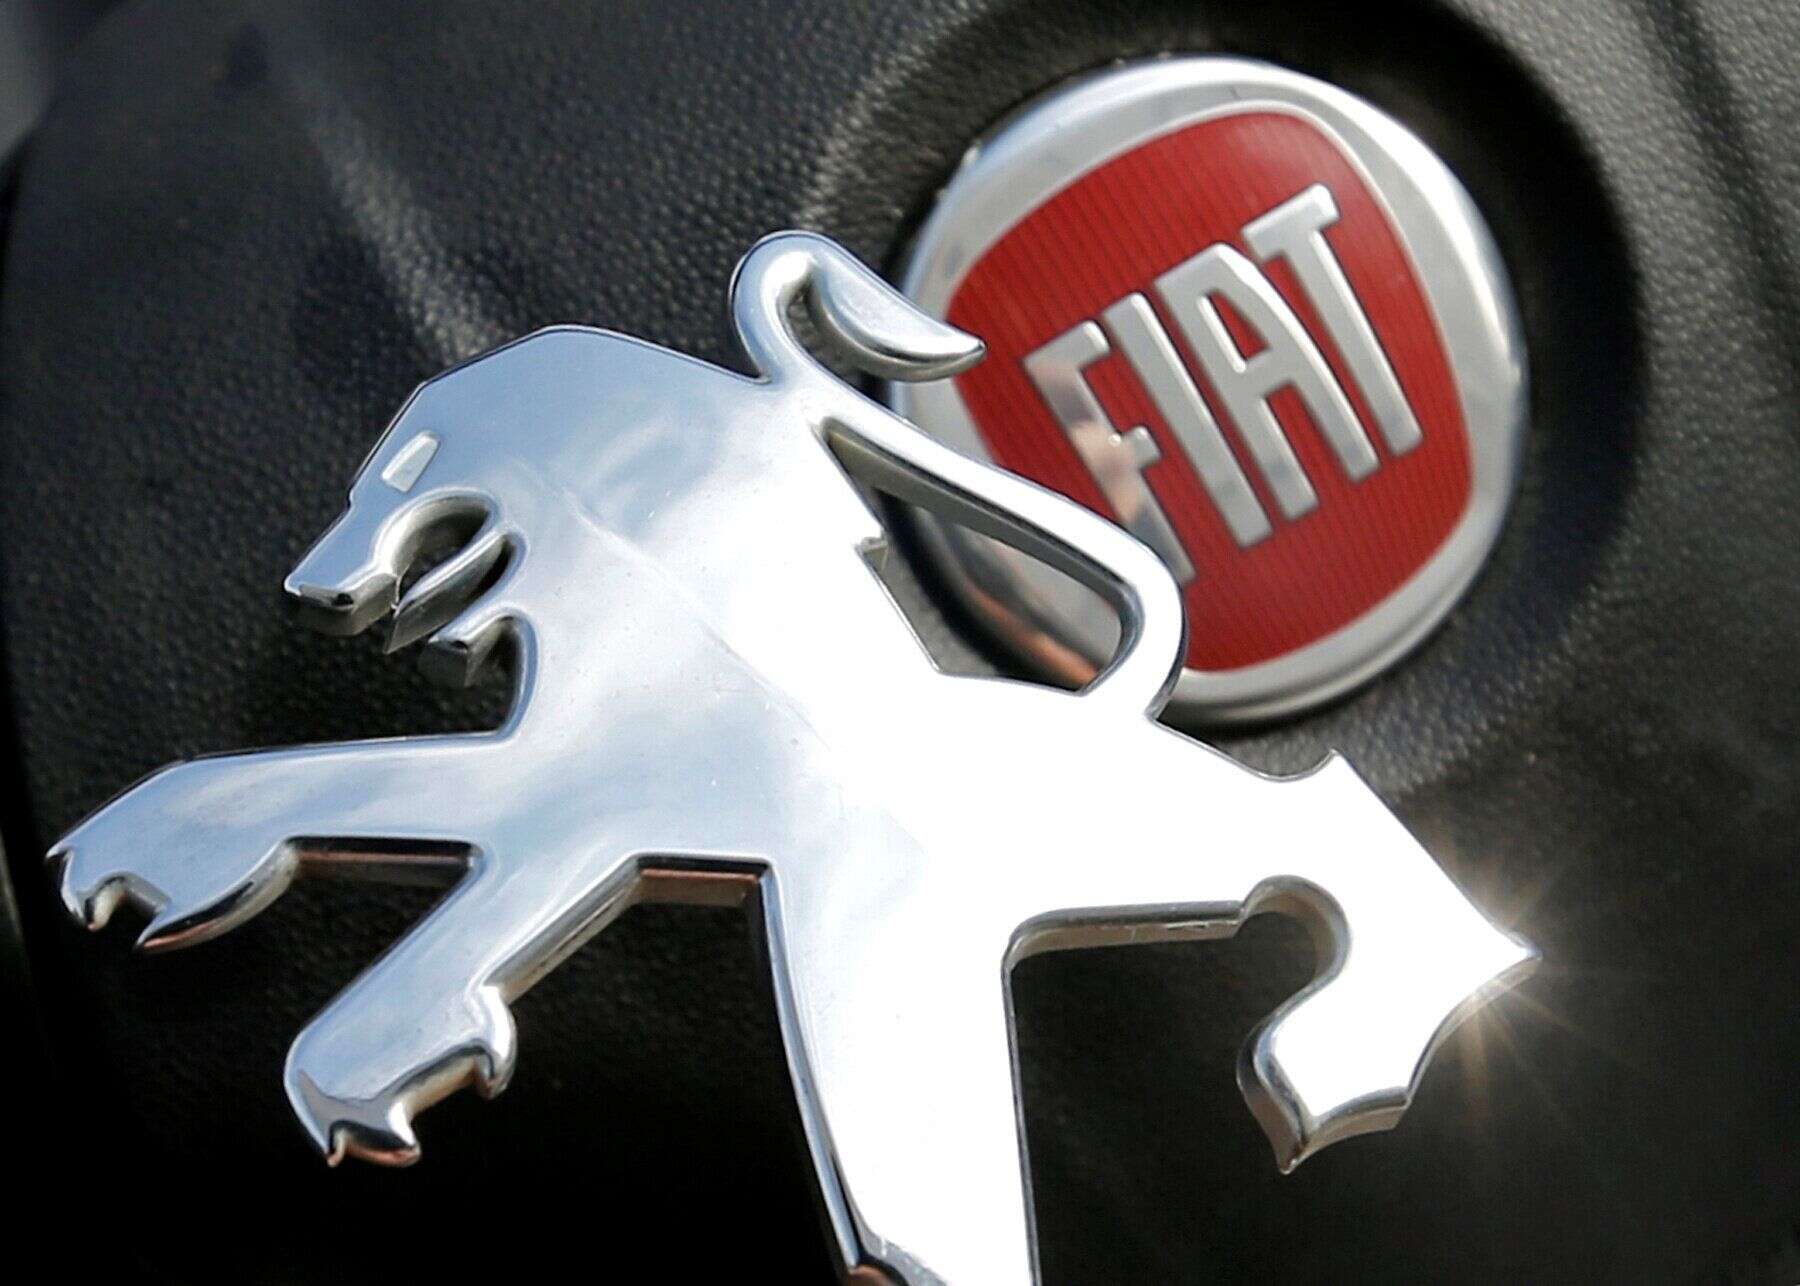 Les constructeurs italo-américain Fiat Chrysler et le français PSA-Peugeot avançaient mercredi à grands pas vers leur mariage, une opération à 50 milliards de dollars pour unir leurs forces à l'heure où l'industrie automobile connaît des difficultés.